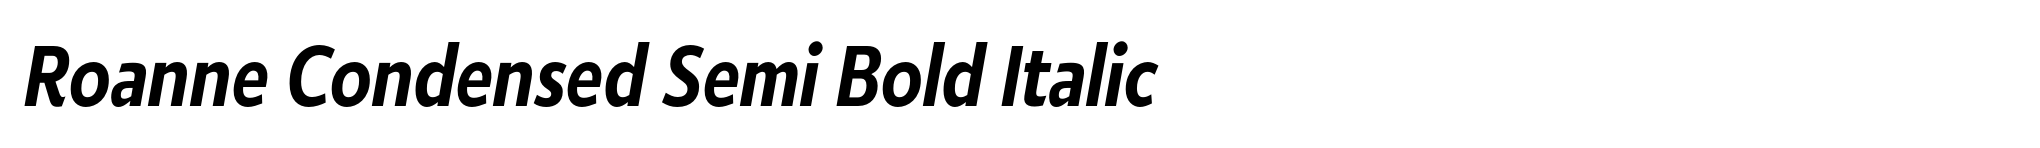 Roanne Condensed Semi Bold Italic image